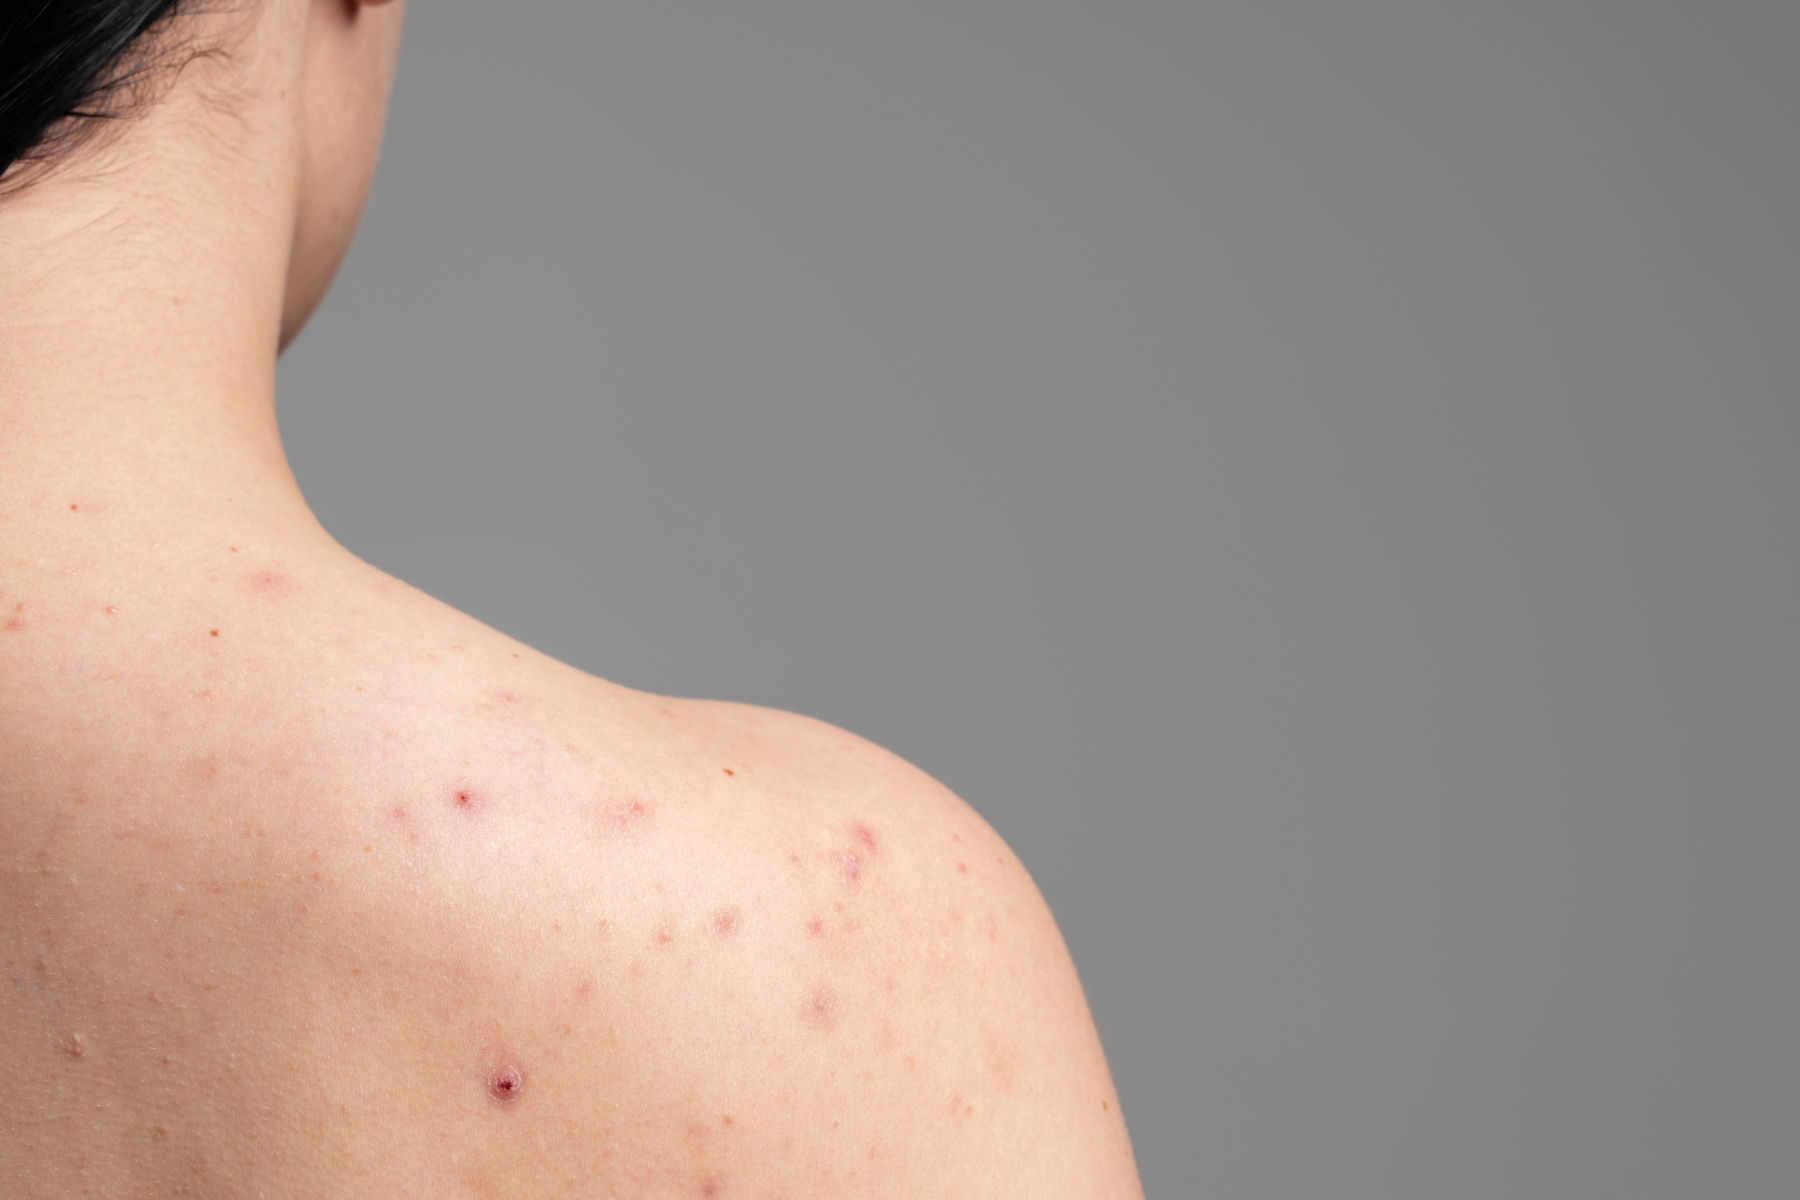 Symptoms of Measles: सर्दी समझने की न करें भूल, खसरा बीमारी की ऐसे करें पहचान